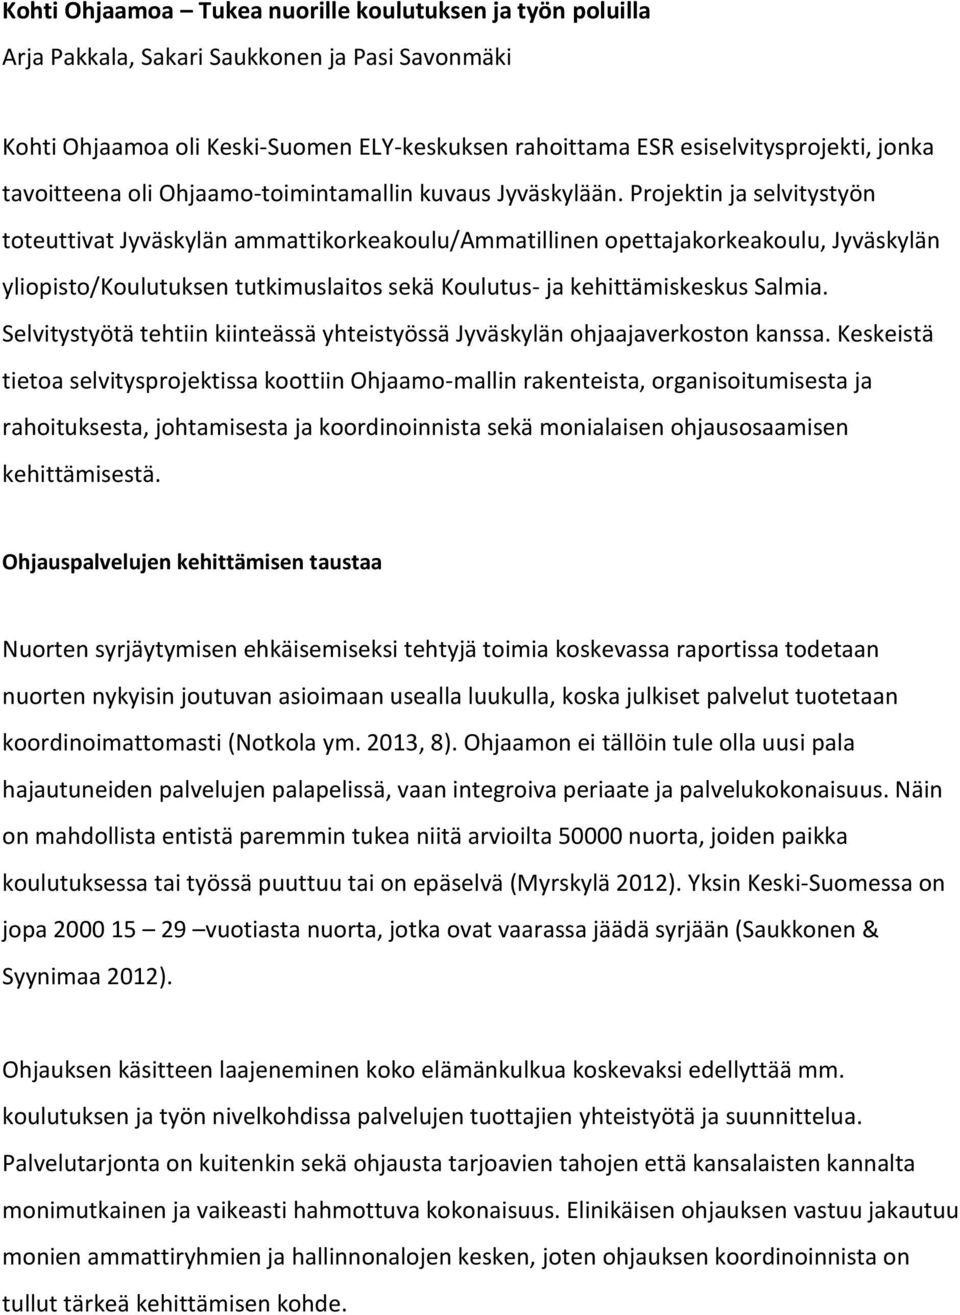 Projektin ja selvitystyön toteuttivat Jyväskylän ammattikorkeakoulu/ammatillinen opettajakorkeakoulu, Jyväskylän yliopisto/koulutuksen tutkimuslaitos sekä Koulutus- ja kehittämiskeskus Salmia.